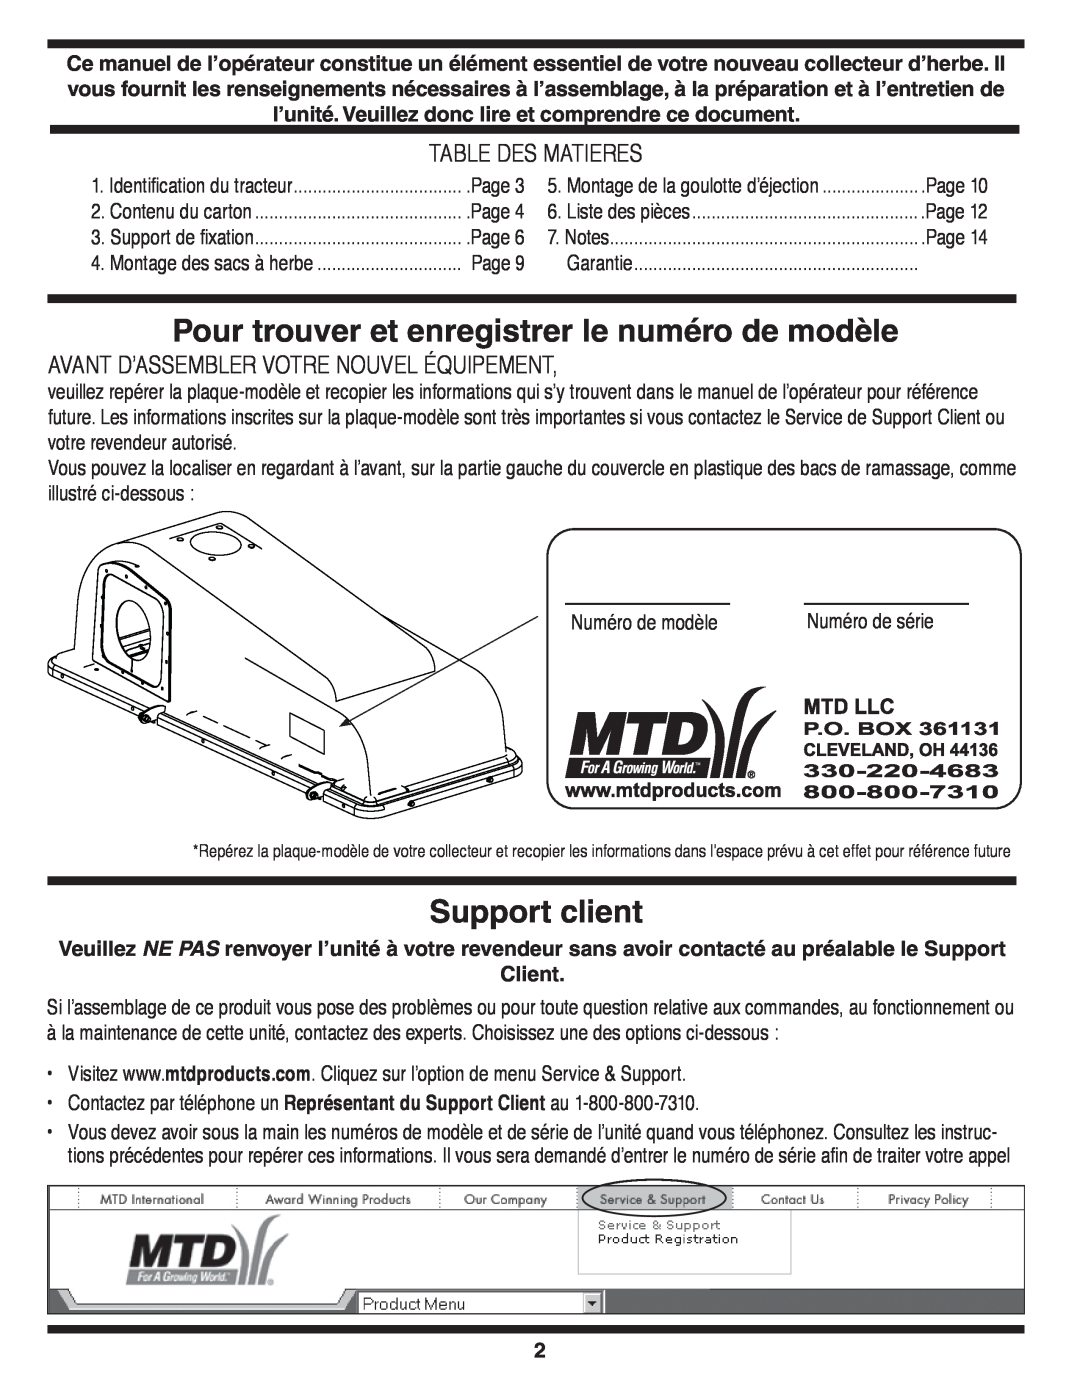 MTD OHD 190-180 warranty Pour trouver et enregistrer le numéro de modèle, Support client, Table Des Matieres 